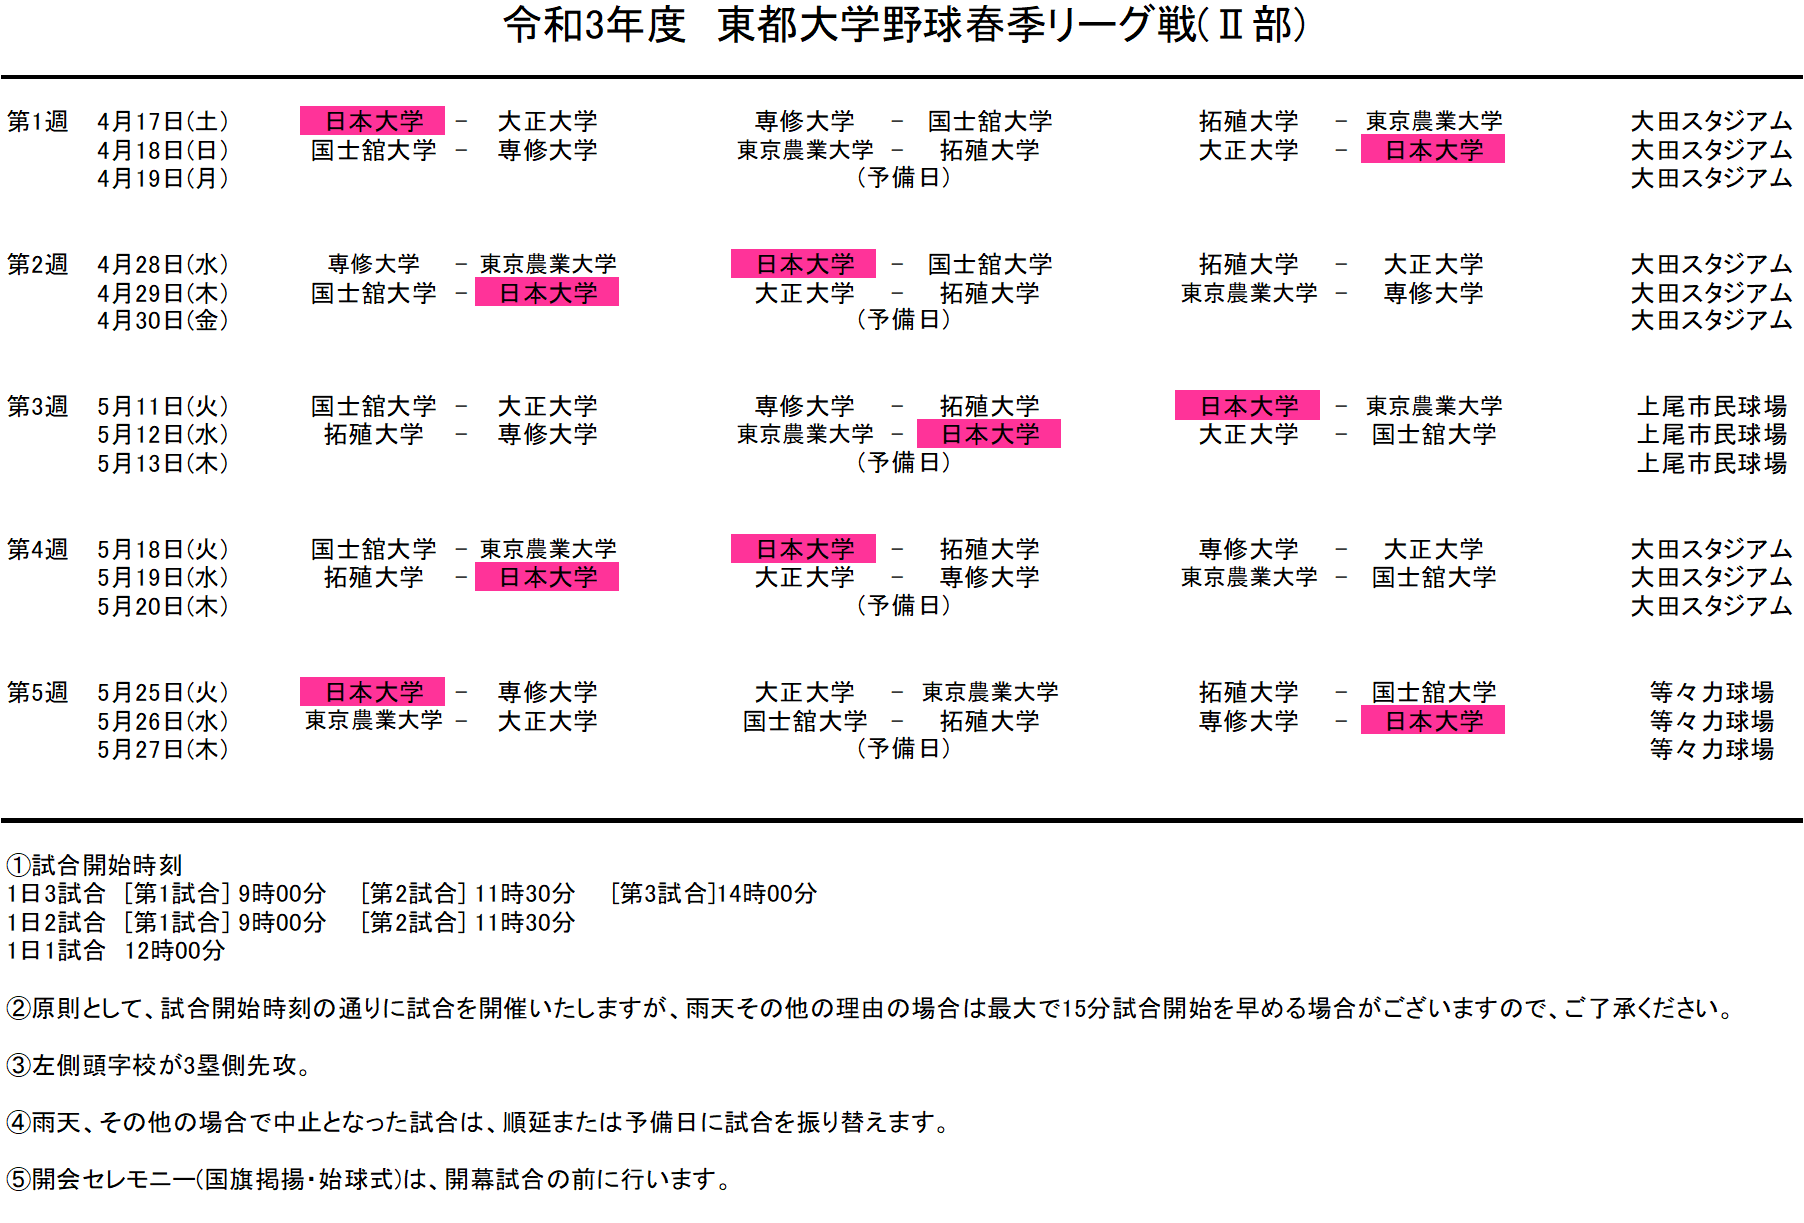 令和3年度 春季リーグ戦日程表 日本大学野球部